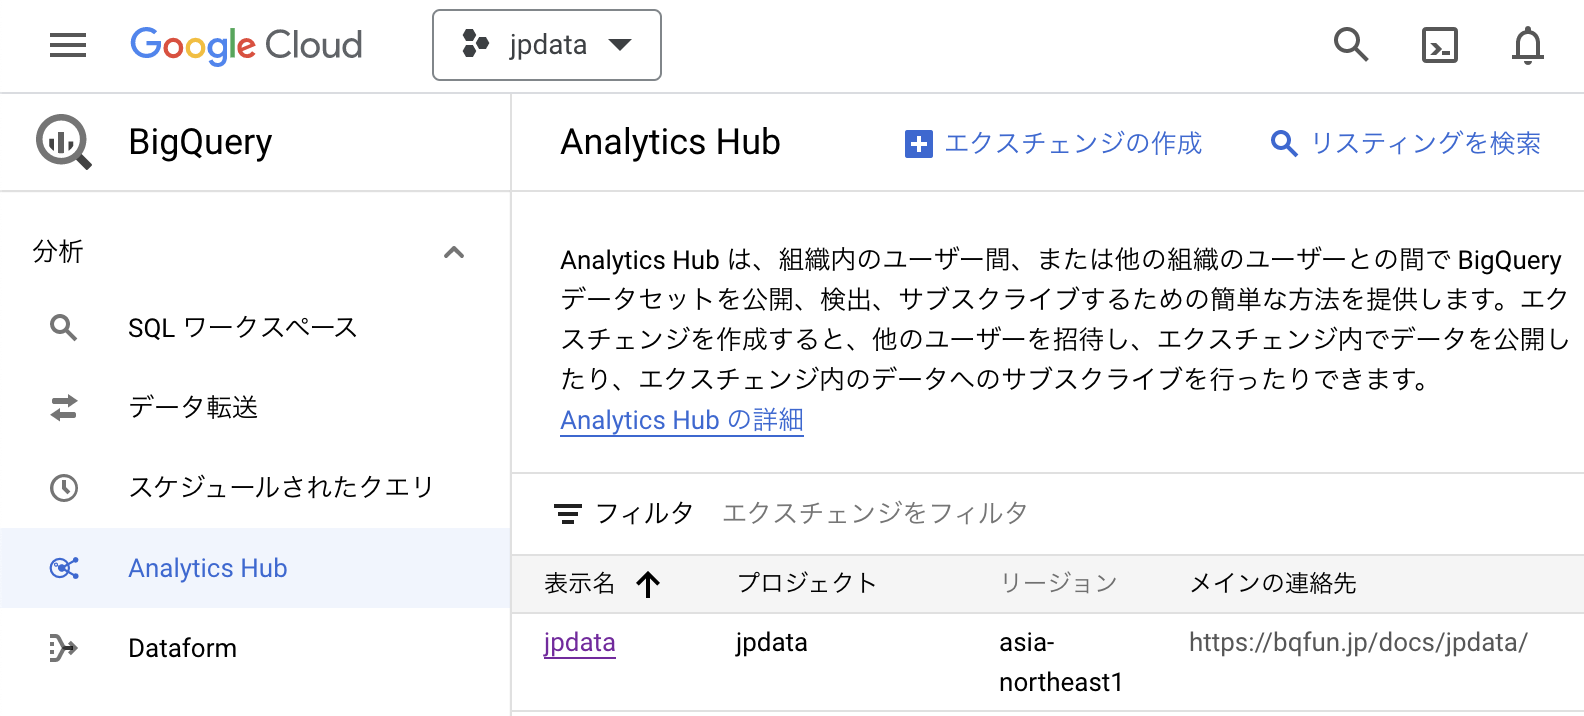 Analytics Hub を開いたときの UI